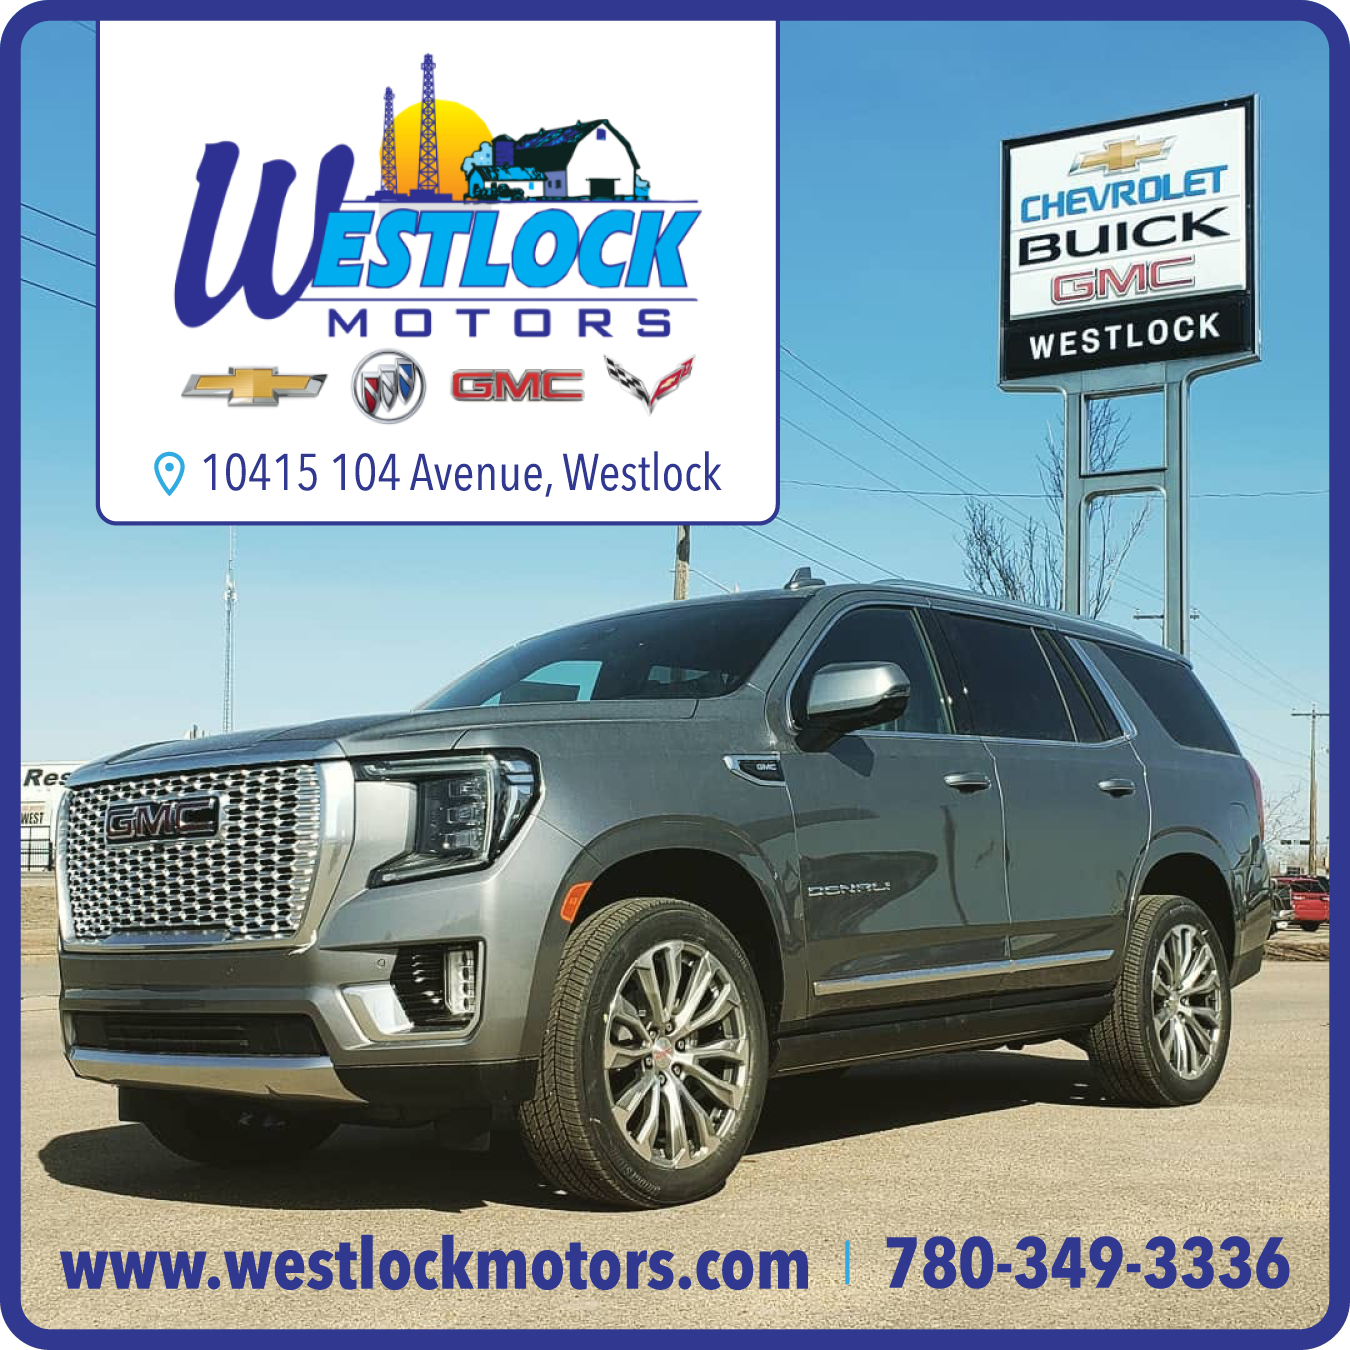 Westlock Motors Limited